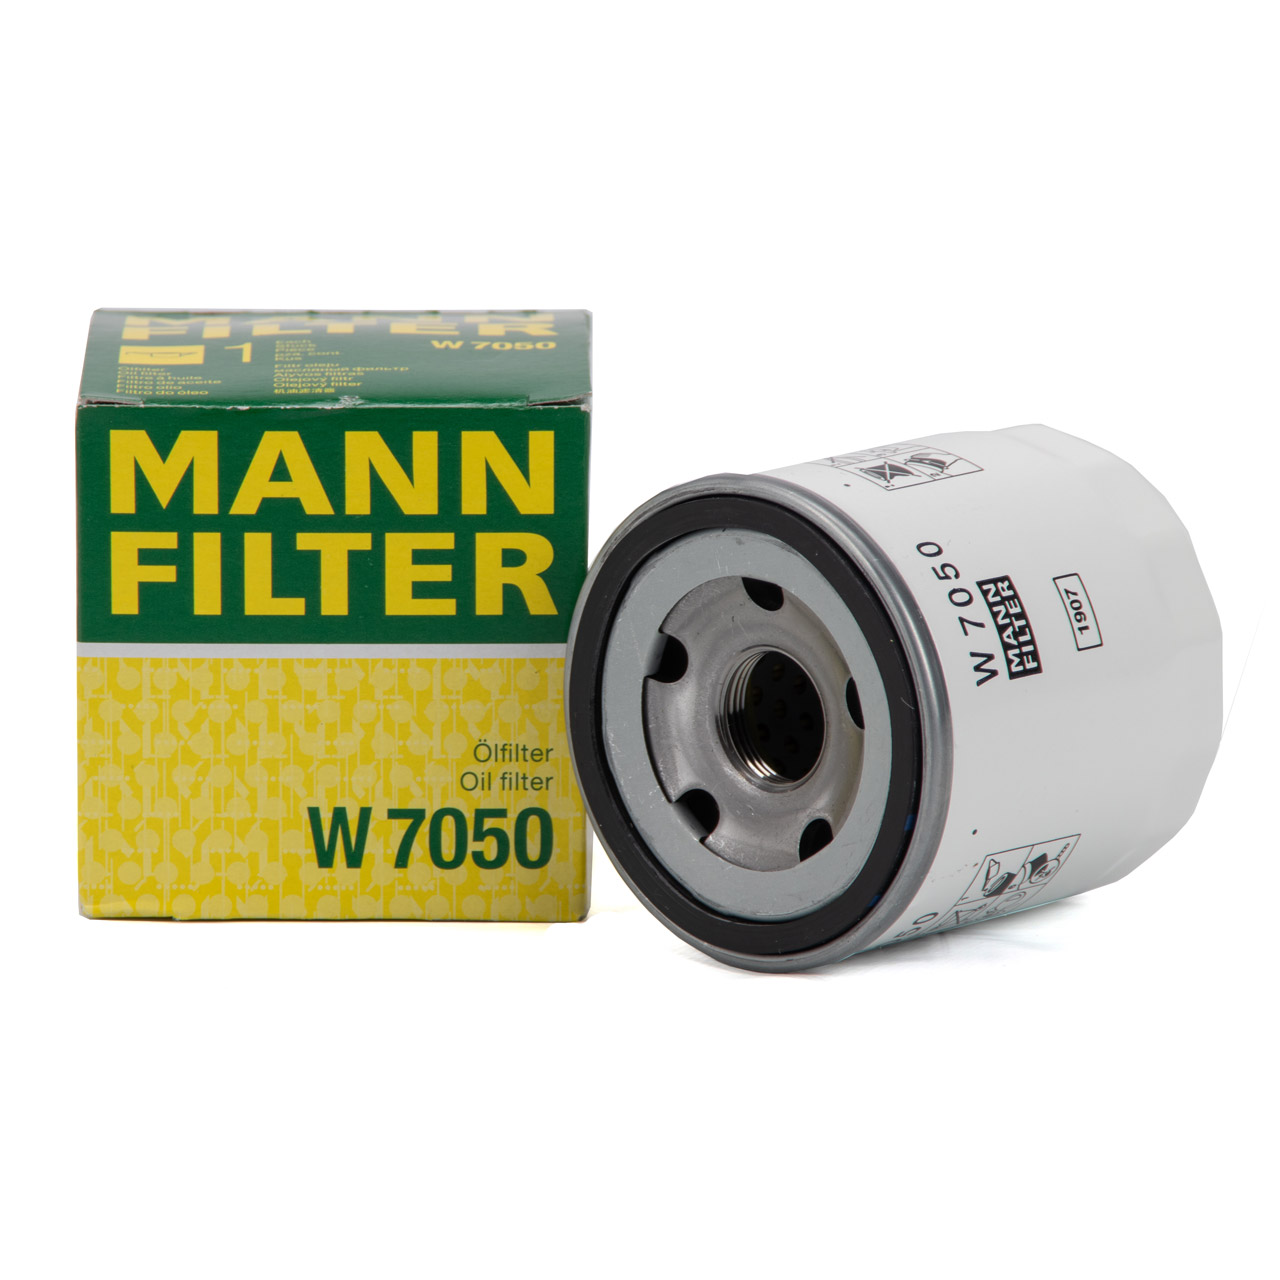 MANN-FILTER Ölfilter - W 7050 